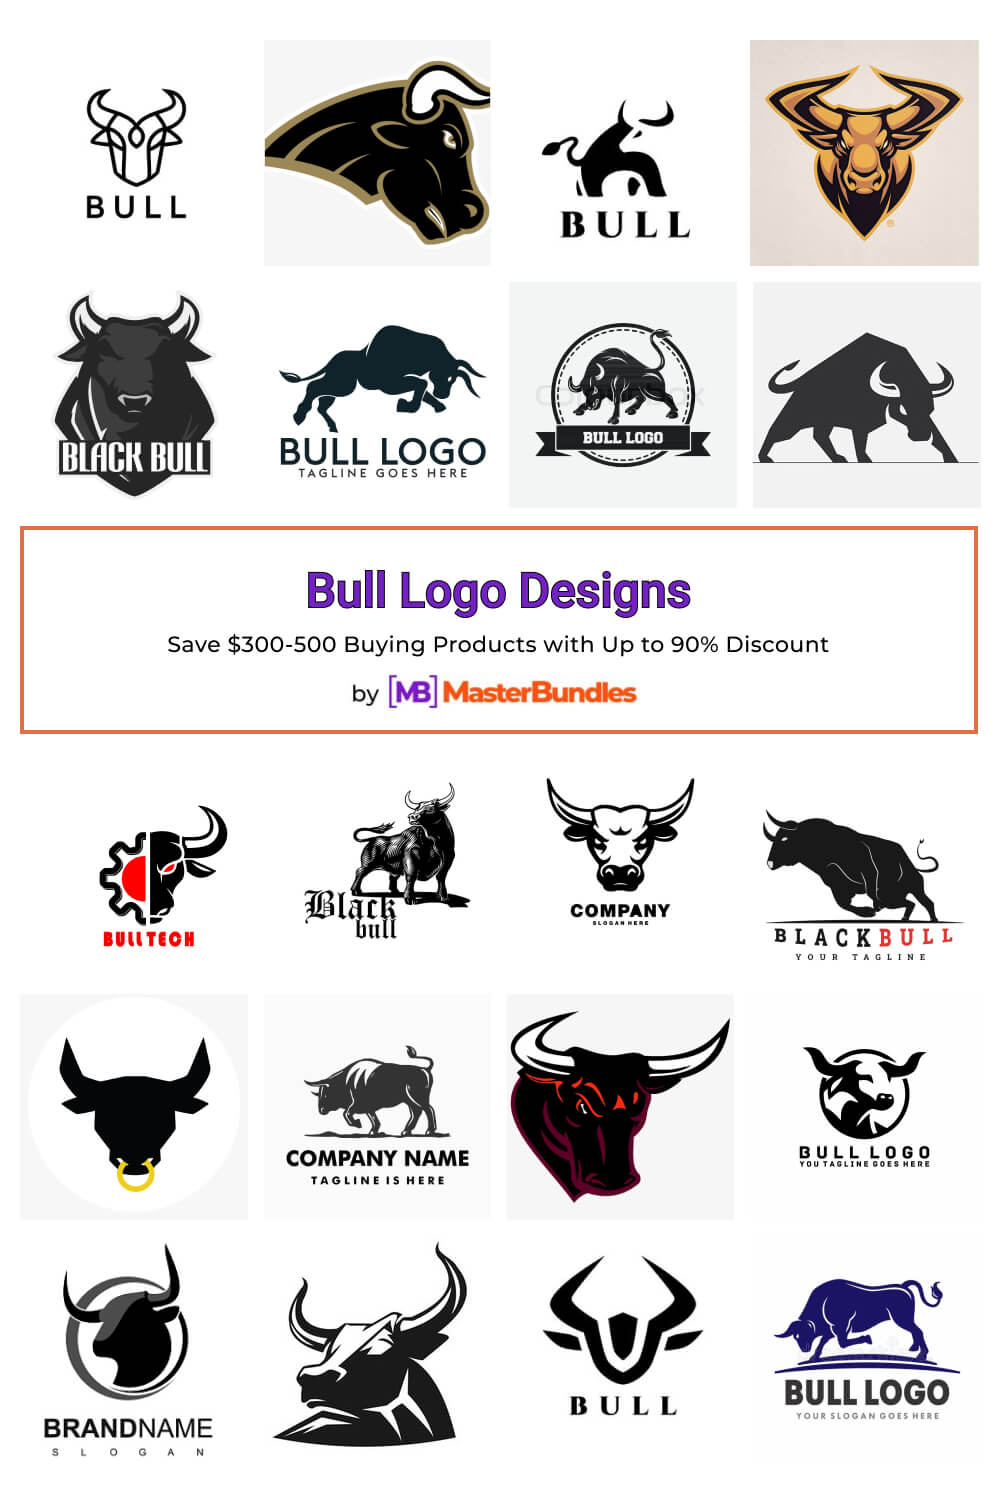 bull logo designs pinterest image.